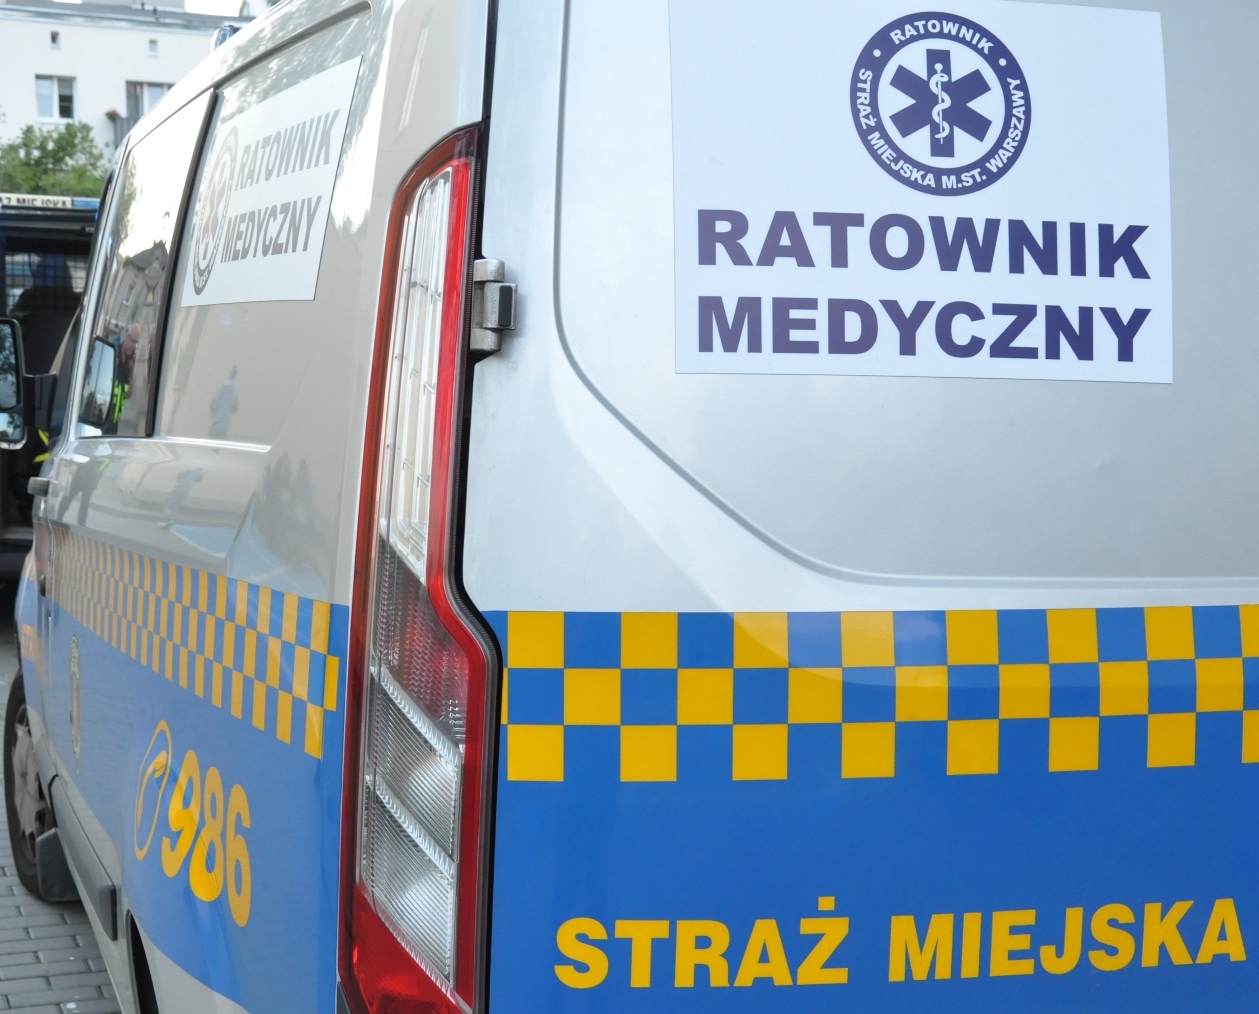 Radiowóz straży miejskiej z oznaczeniem ratownika medycznego- zdjęcie ilustracyjne